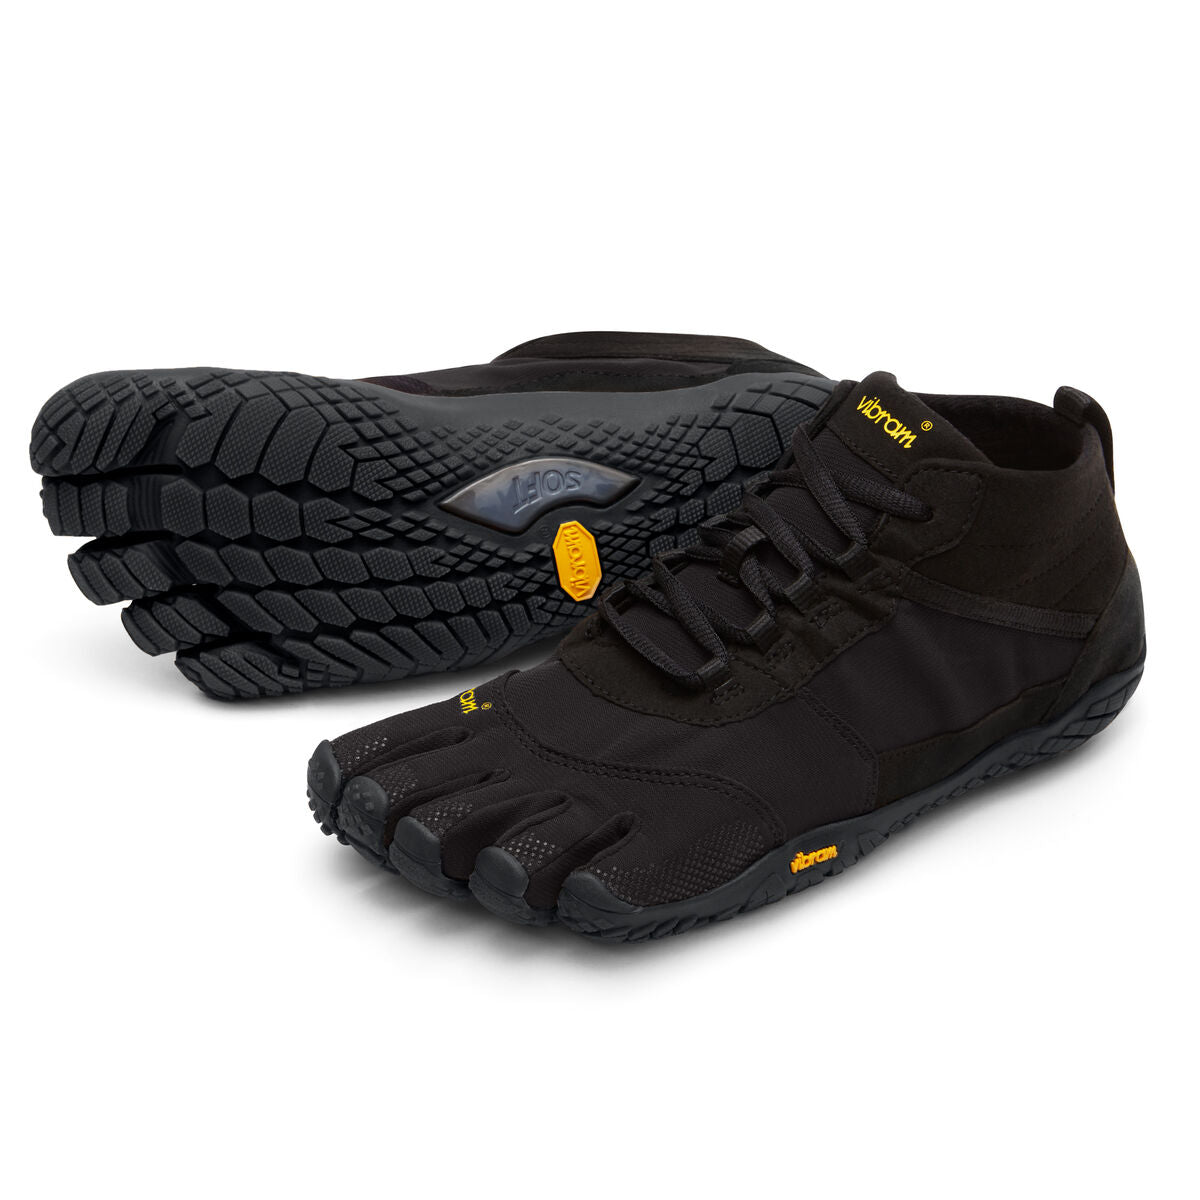 Men's Vibram Five Fingers V-Trek Hiking Shoe in Black/Black from the front